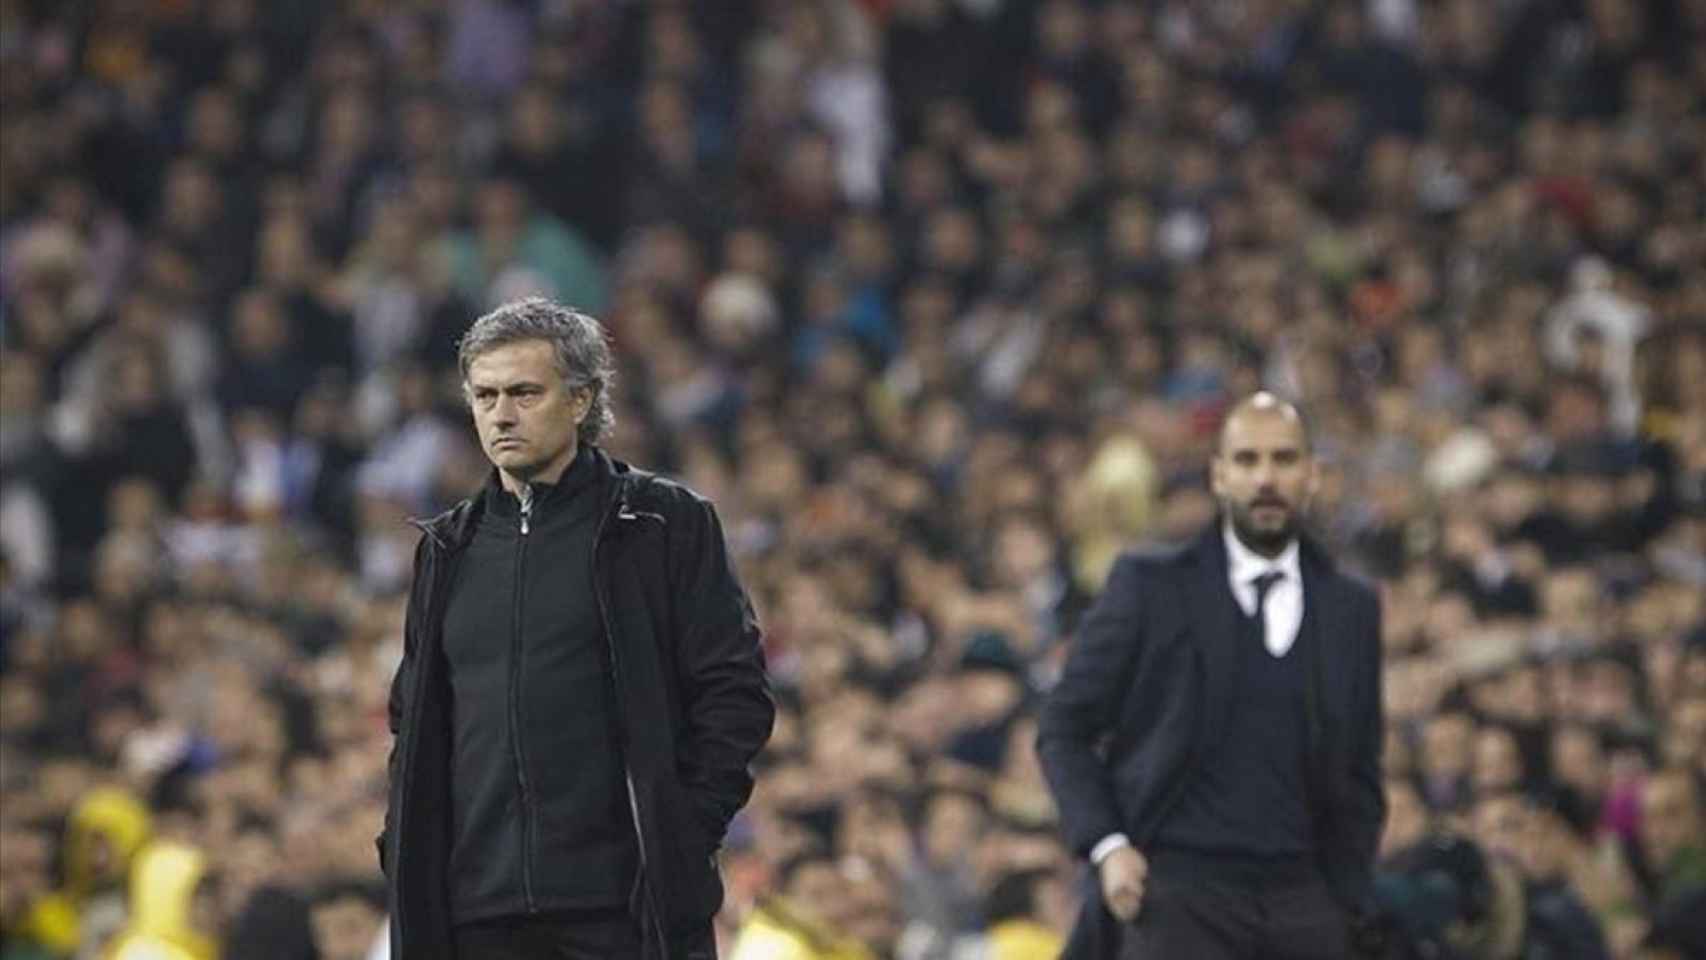 José Mourinho contra Pep Guardiola, en un clásico disputado hace varios años